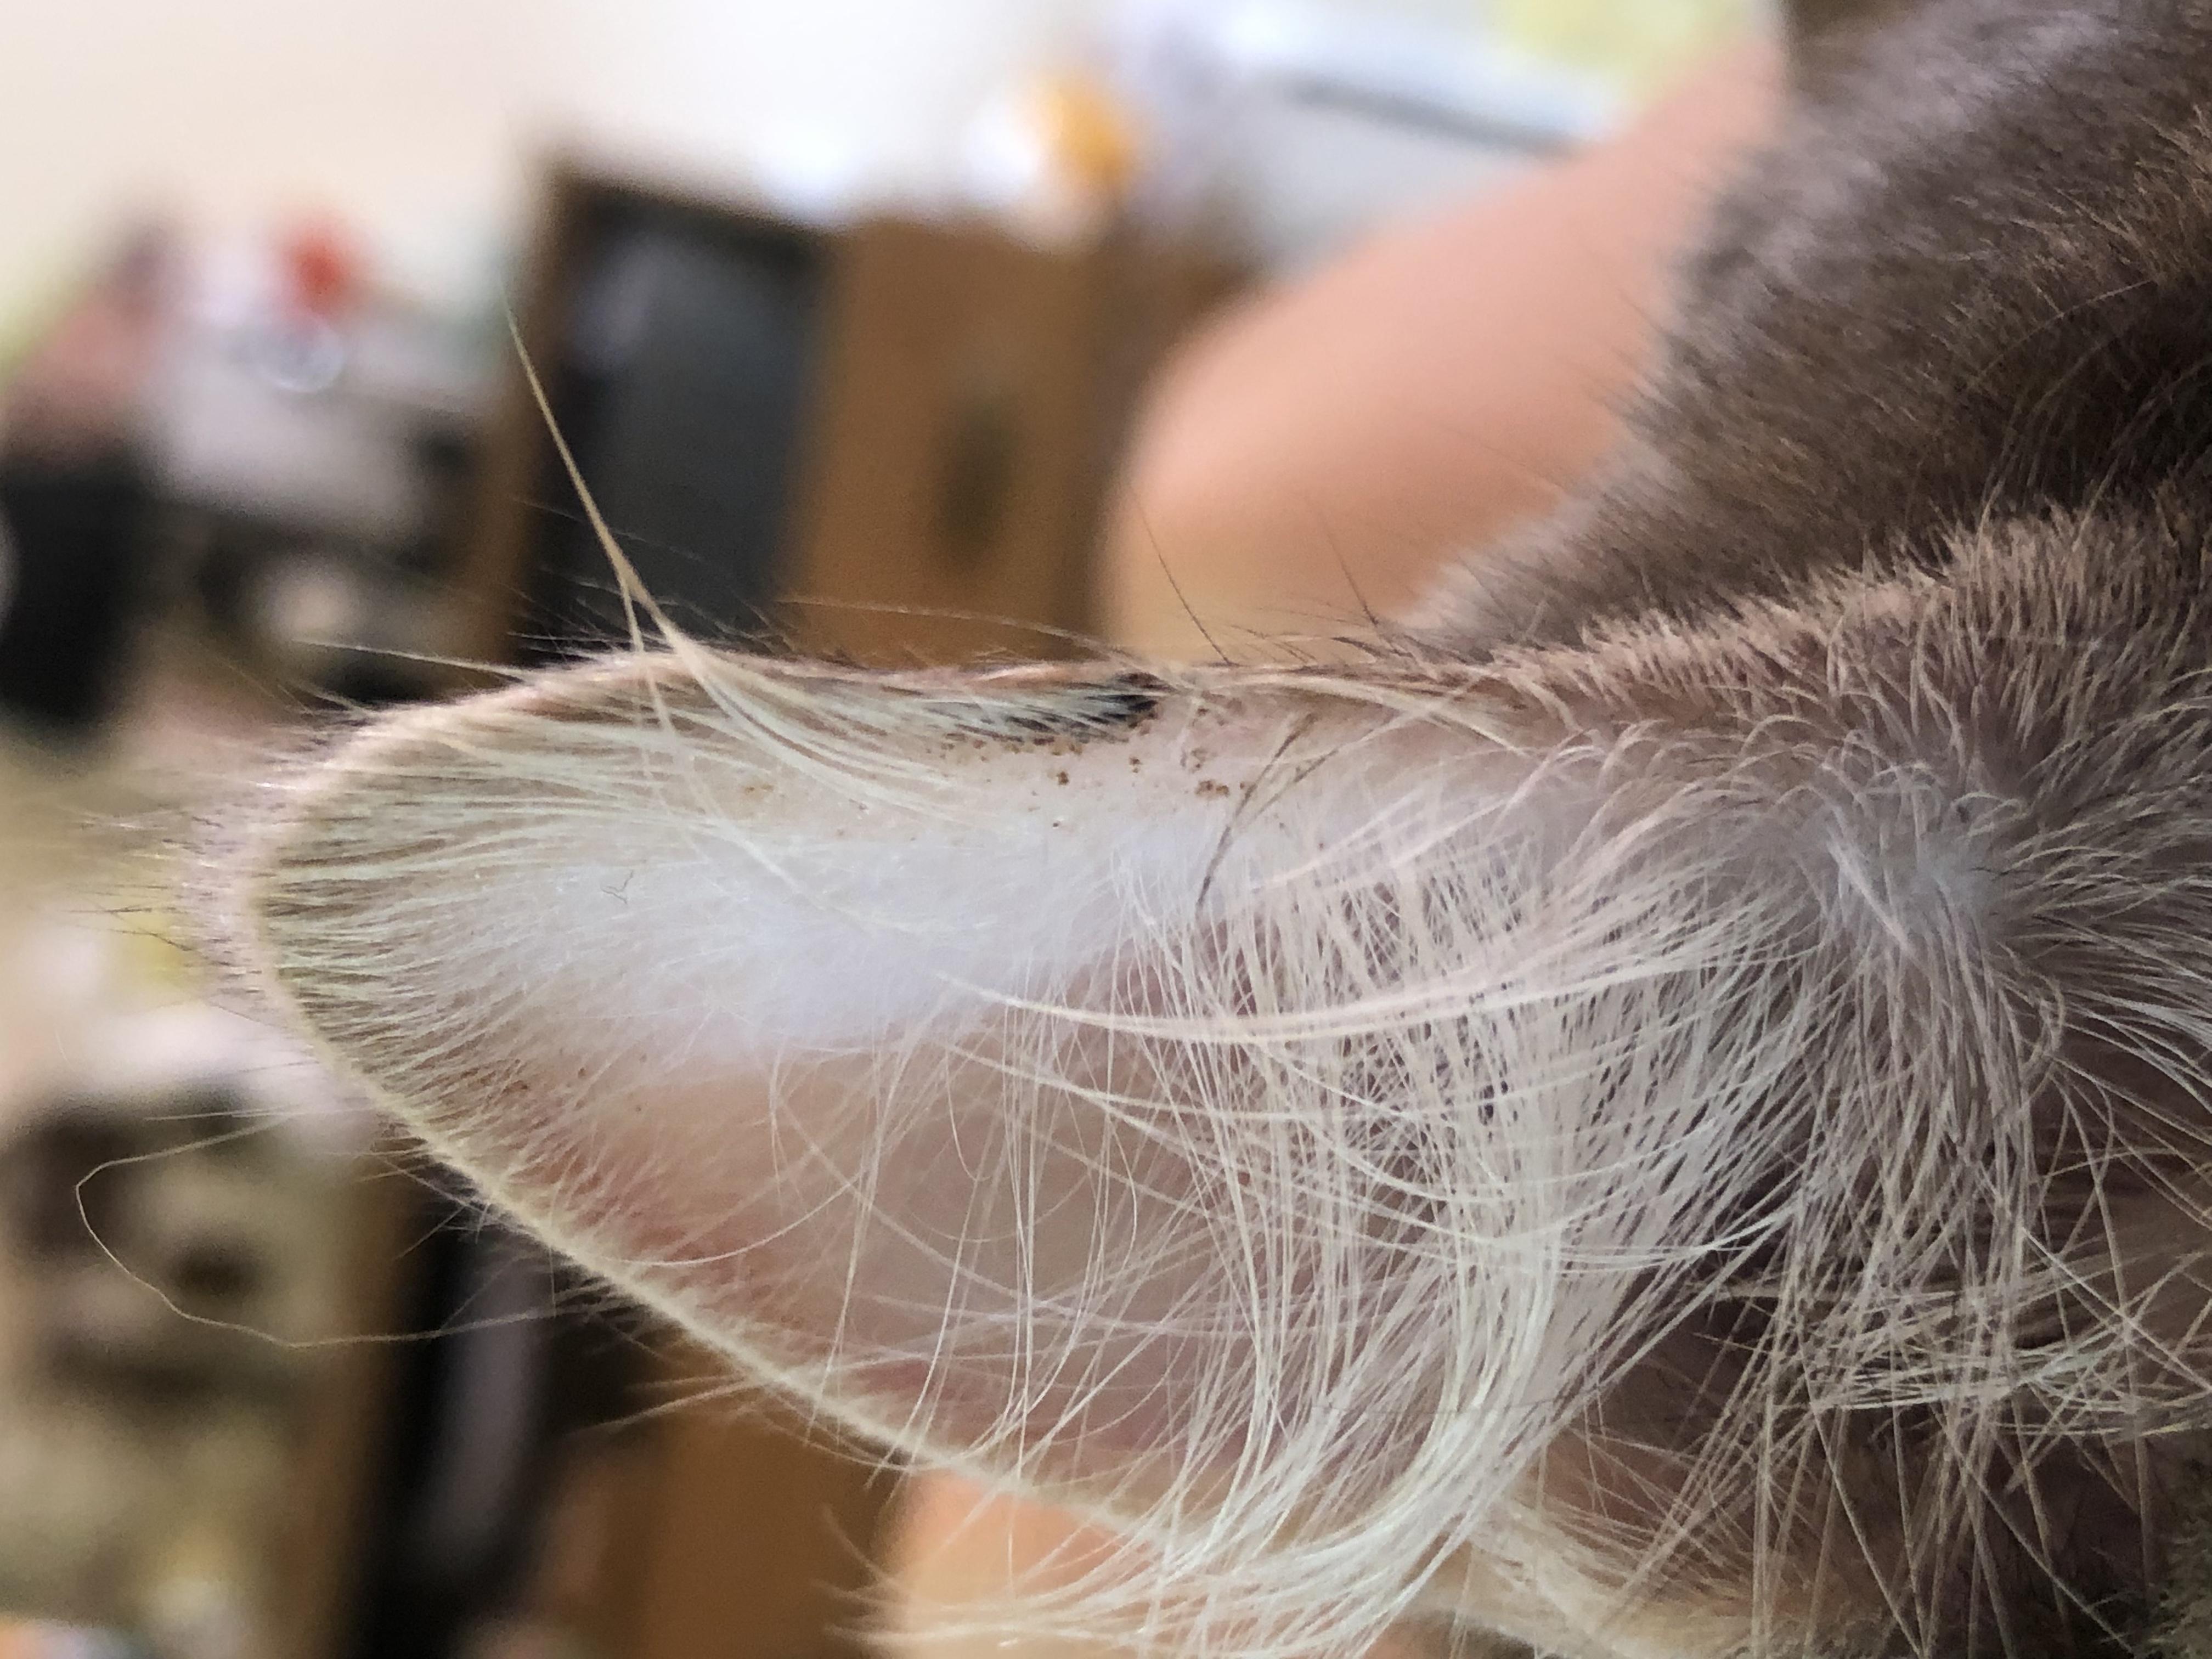 У кошки на ушах и голове болячки - возможные причины патологии. | Лапа помощи | Дзен